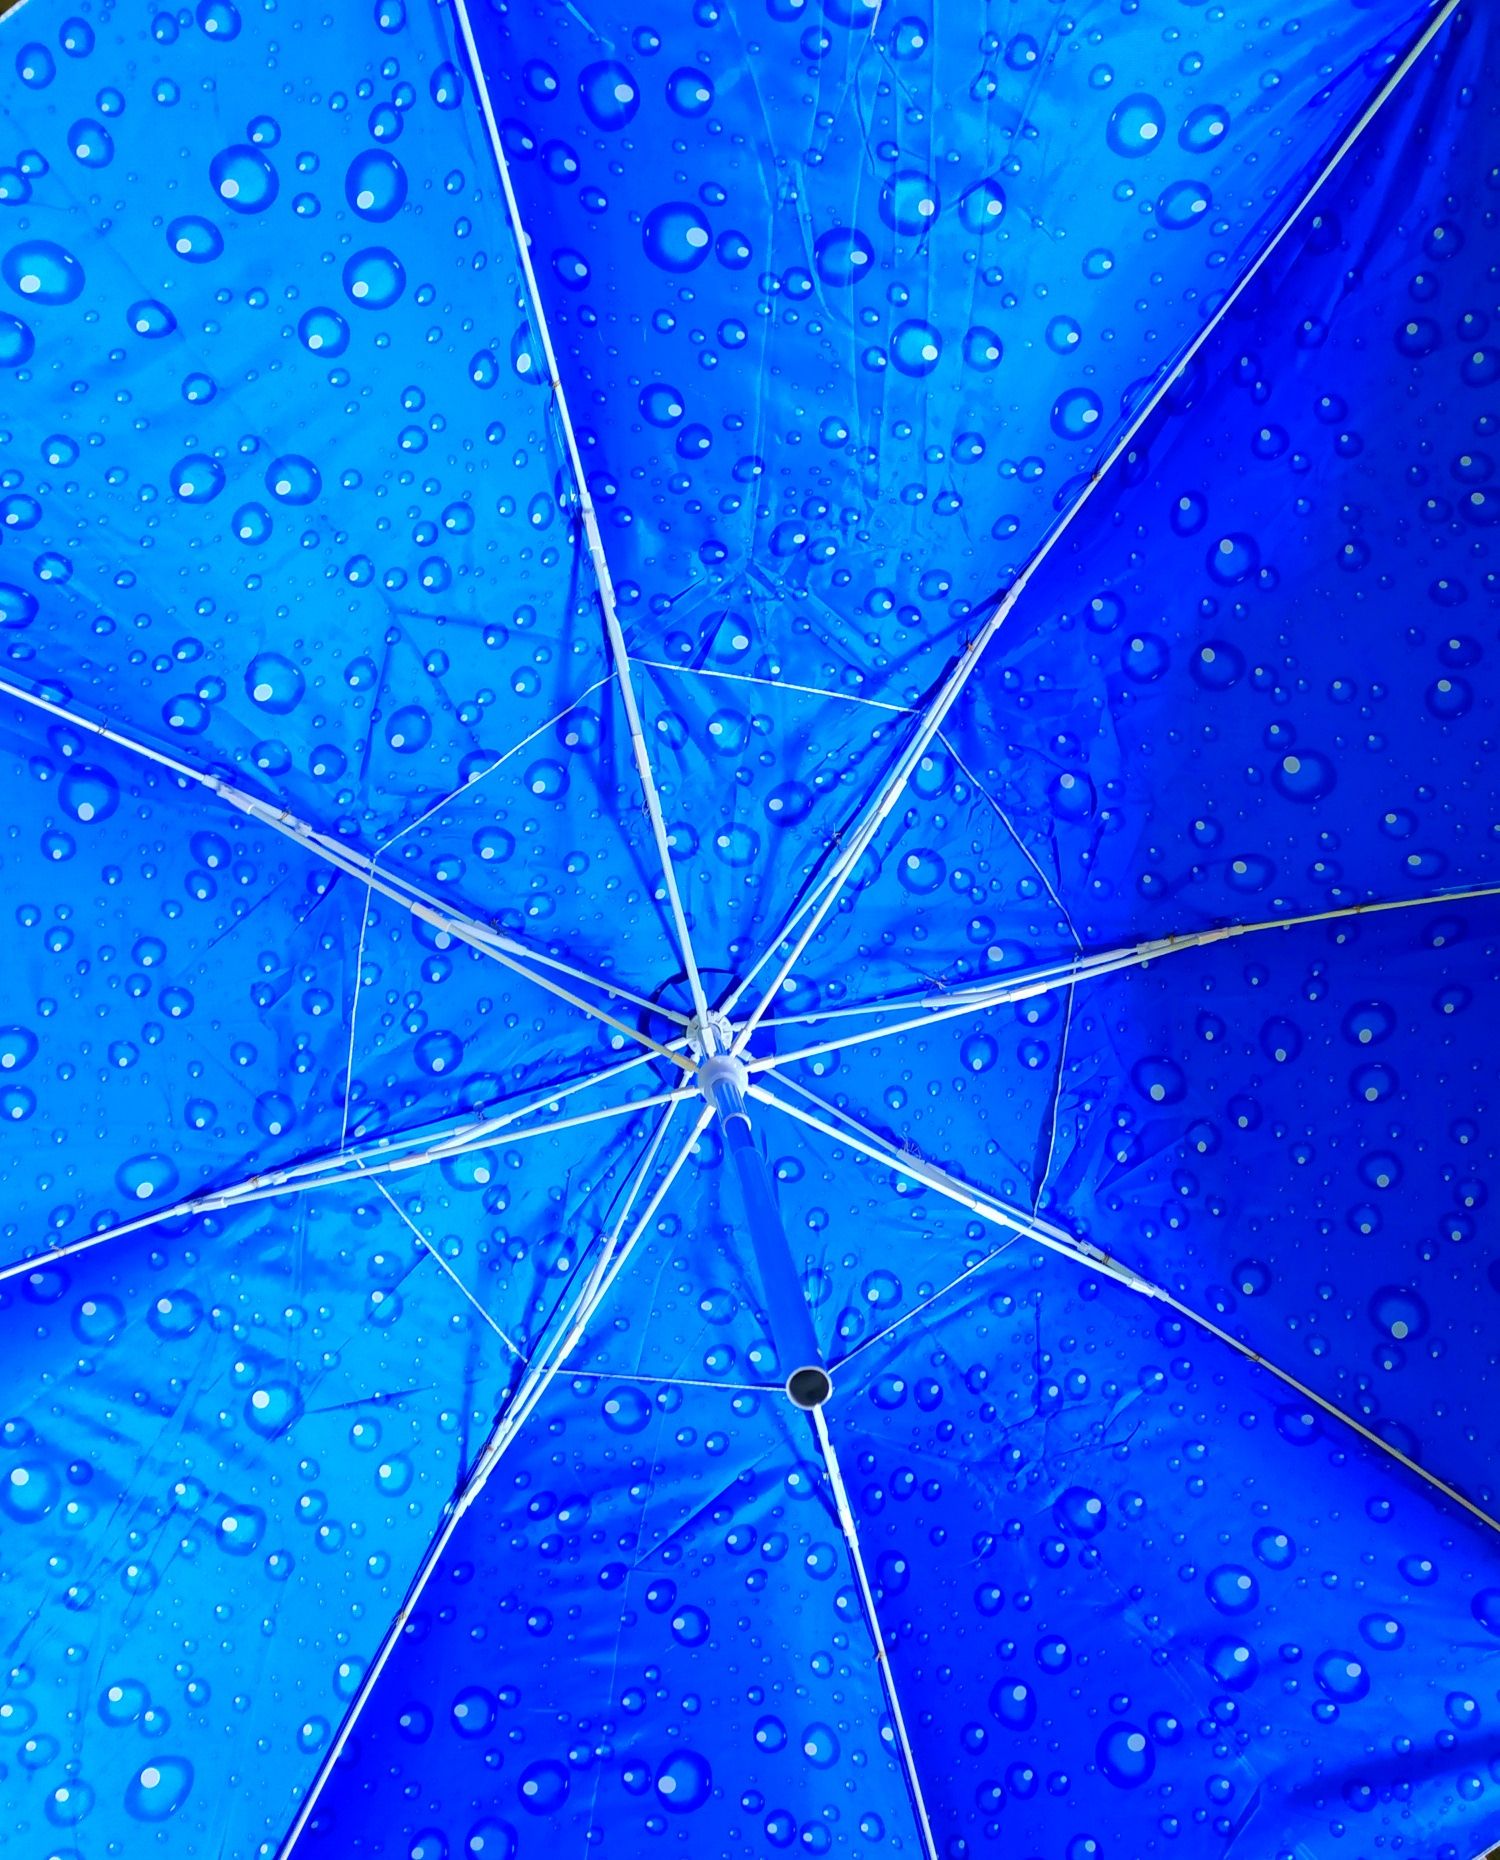 Зонтик с наклоном пружины для отдыха с водонепроницаемая чехлом